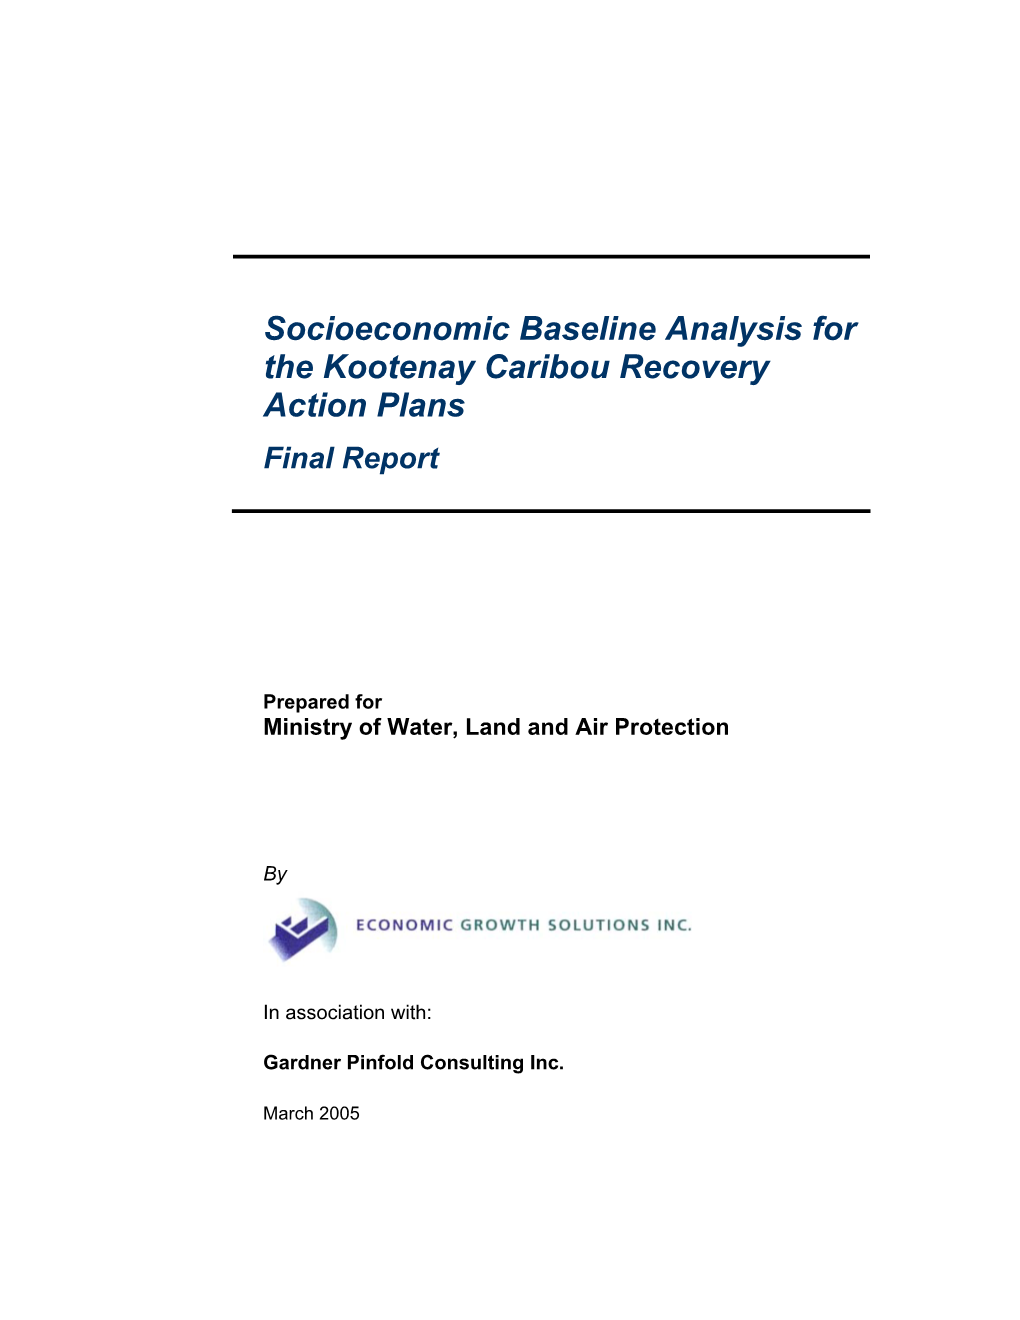 Kootenay Socioeconomic Baseline Analysis